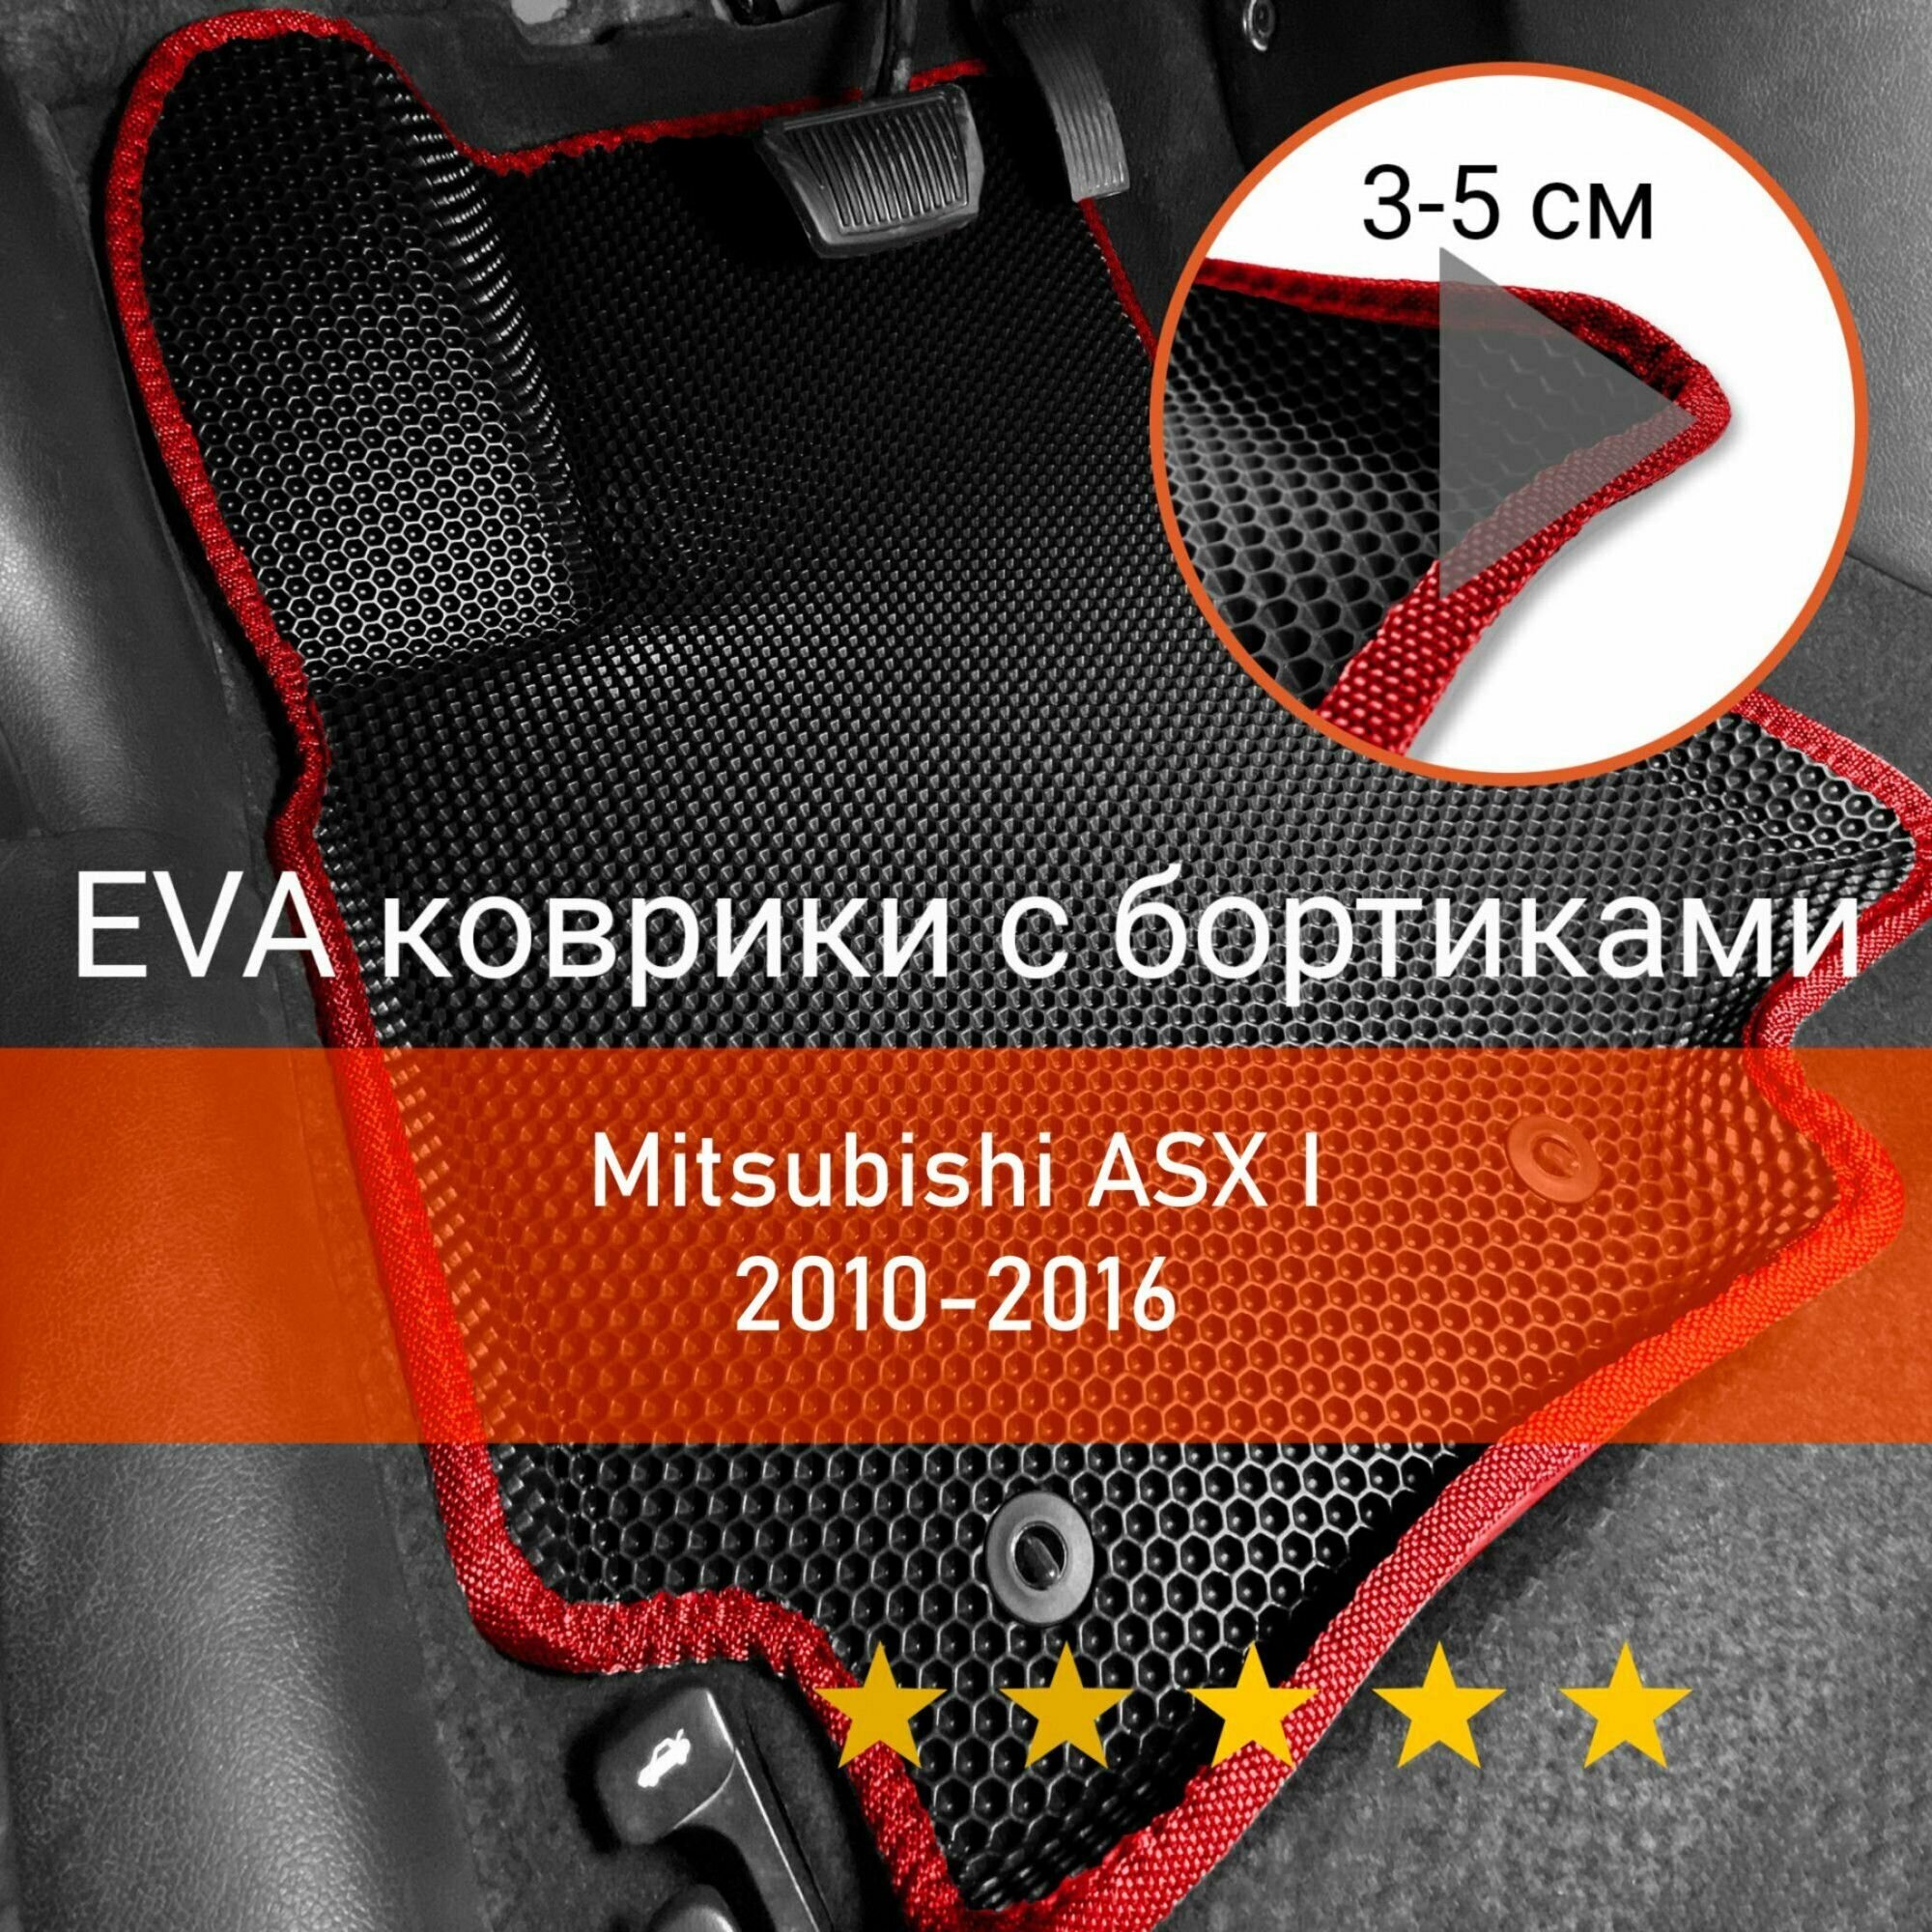 3Д коврики ЕВА (EVA ЭВА) с бортиками на Mitsubishi ASX 1 2010-2016 Митсубиси (Мицубиси Мицубиши) АСХ АСикс Левый руль Соты Черный с красной окантовкой